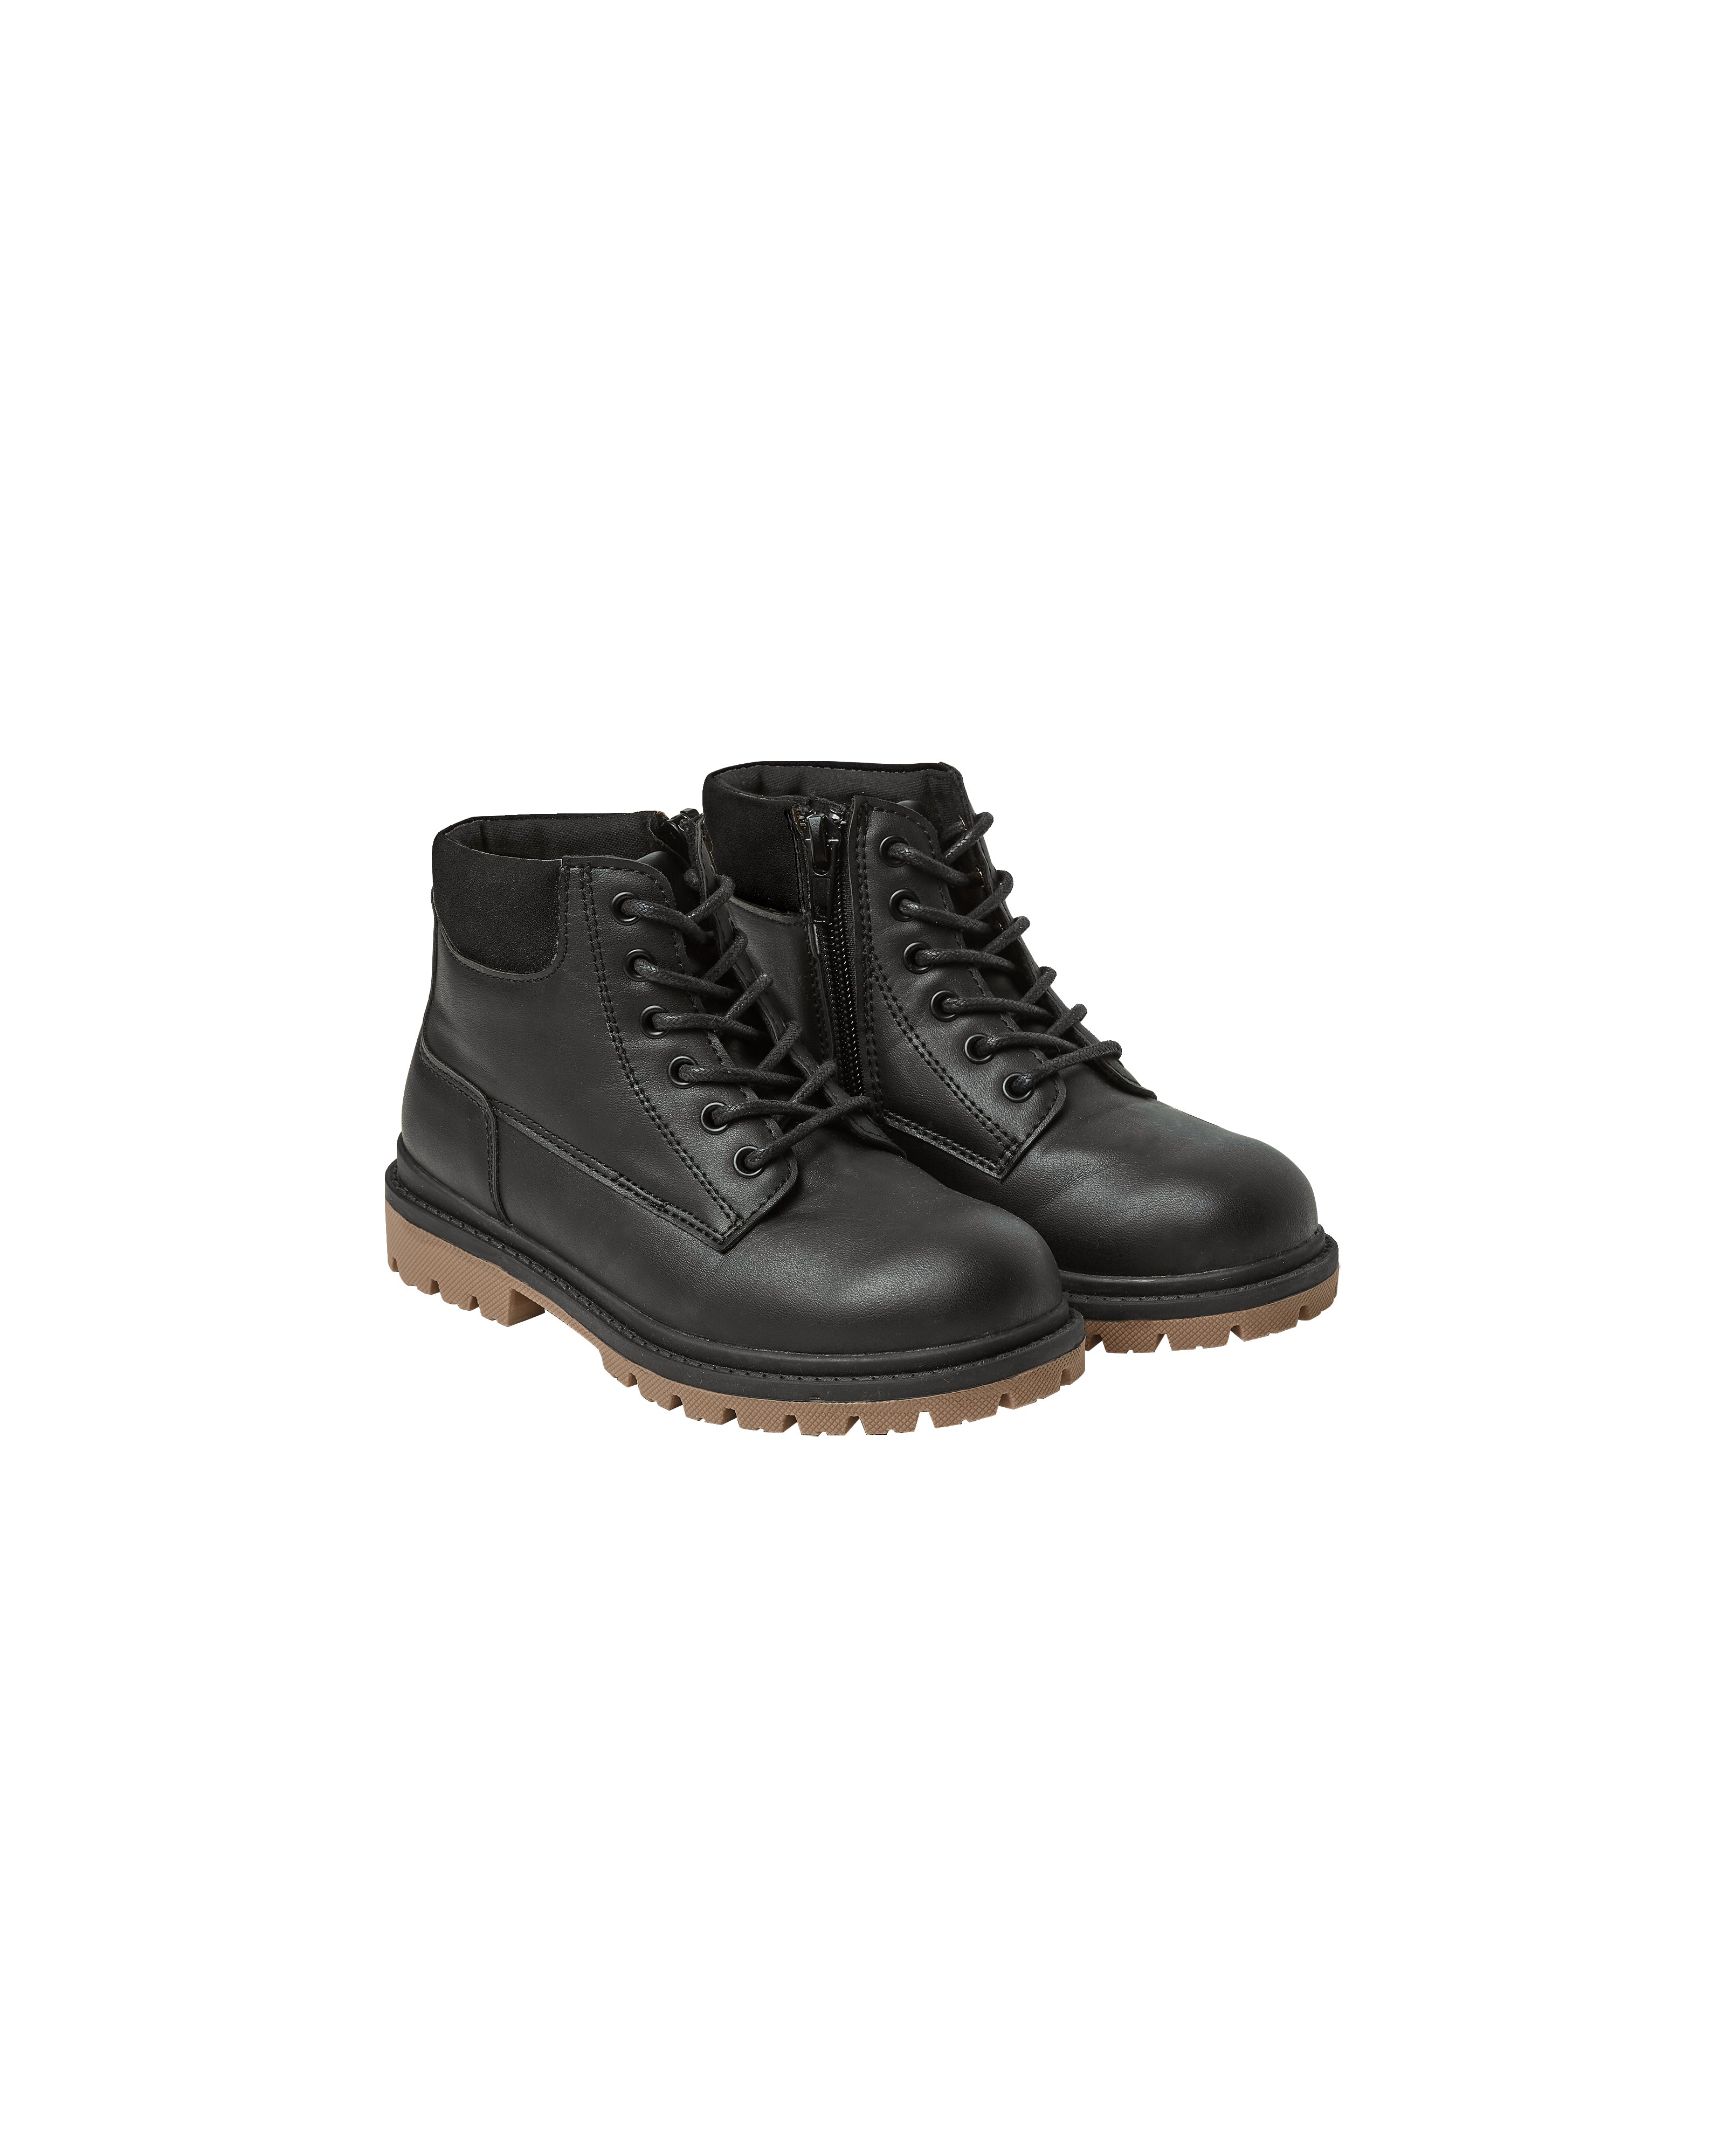 Rylee + Cru Work Boot - Vintage Black